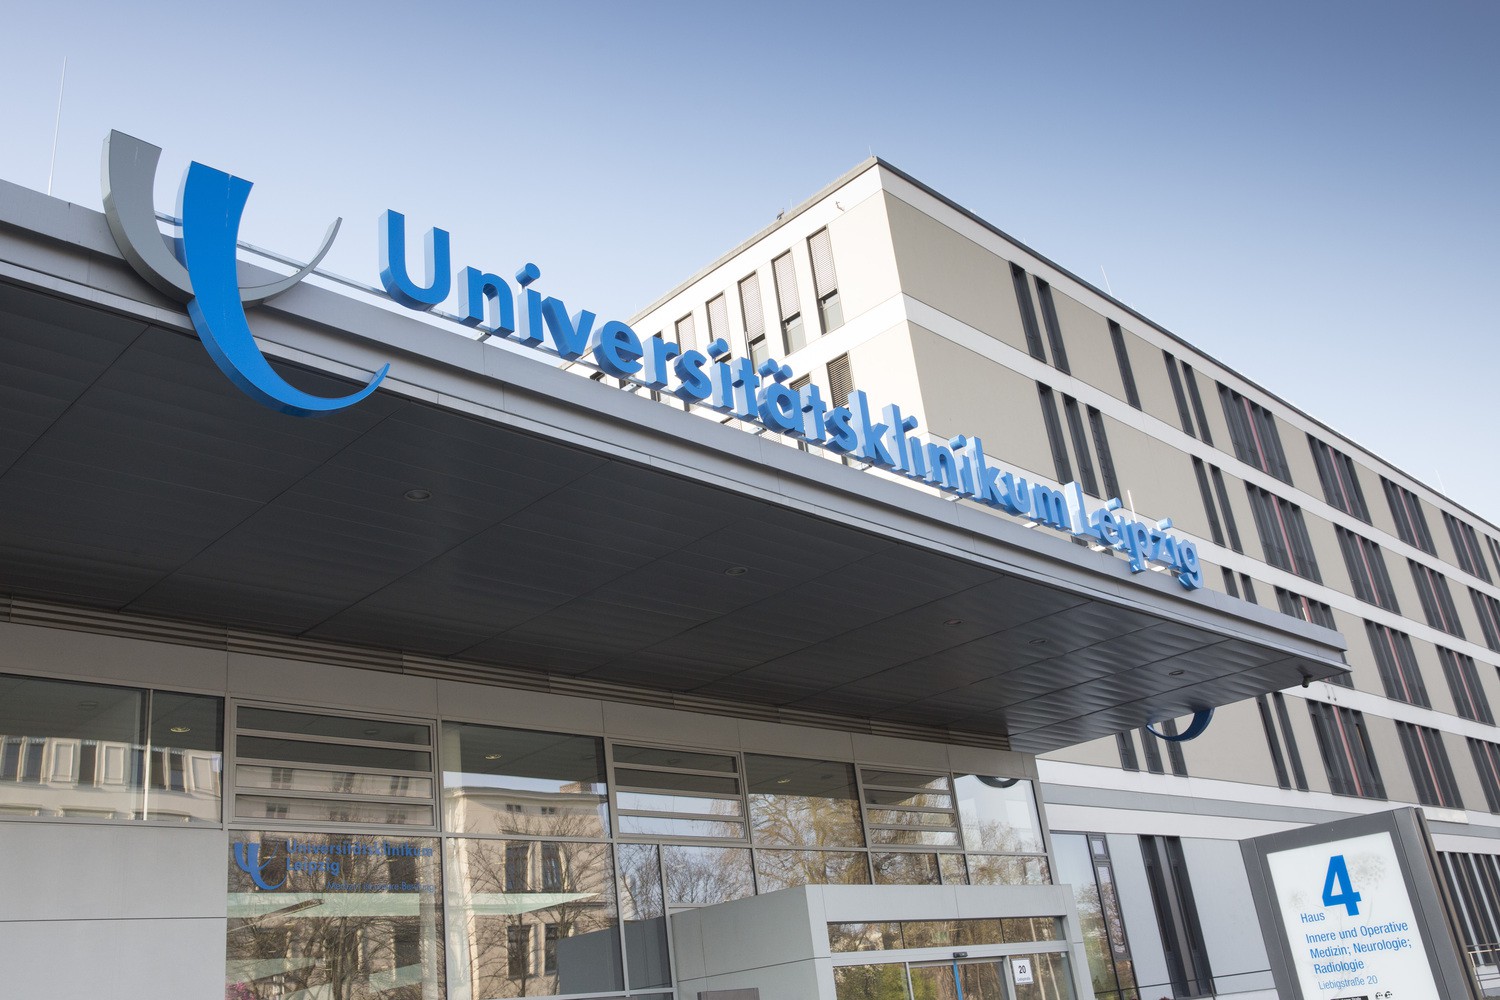 2671 Entbindungen, 2779 Babys - das UKL ist Sachsens geburtenstärkste Klinik 2019.